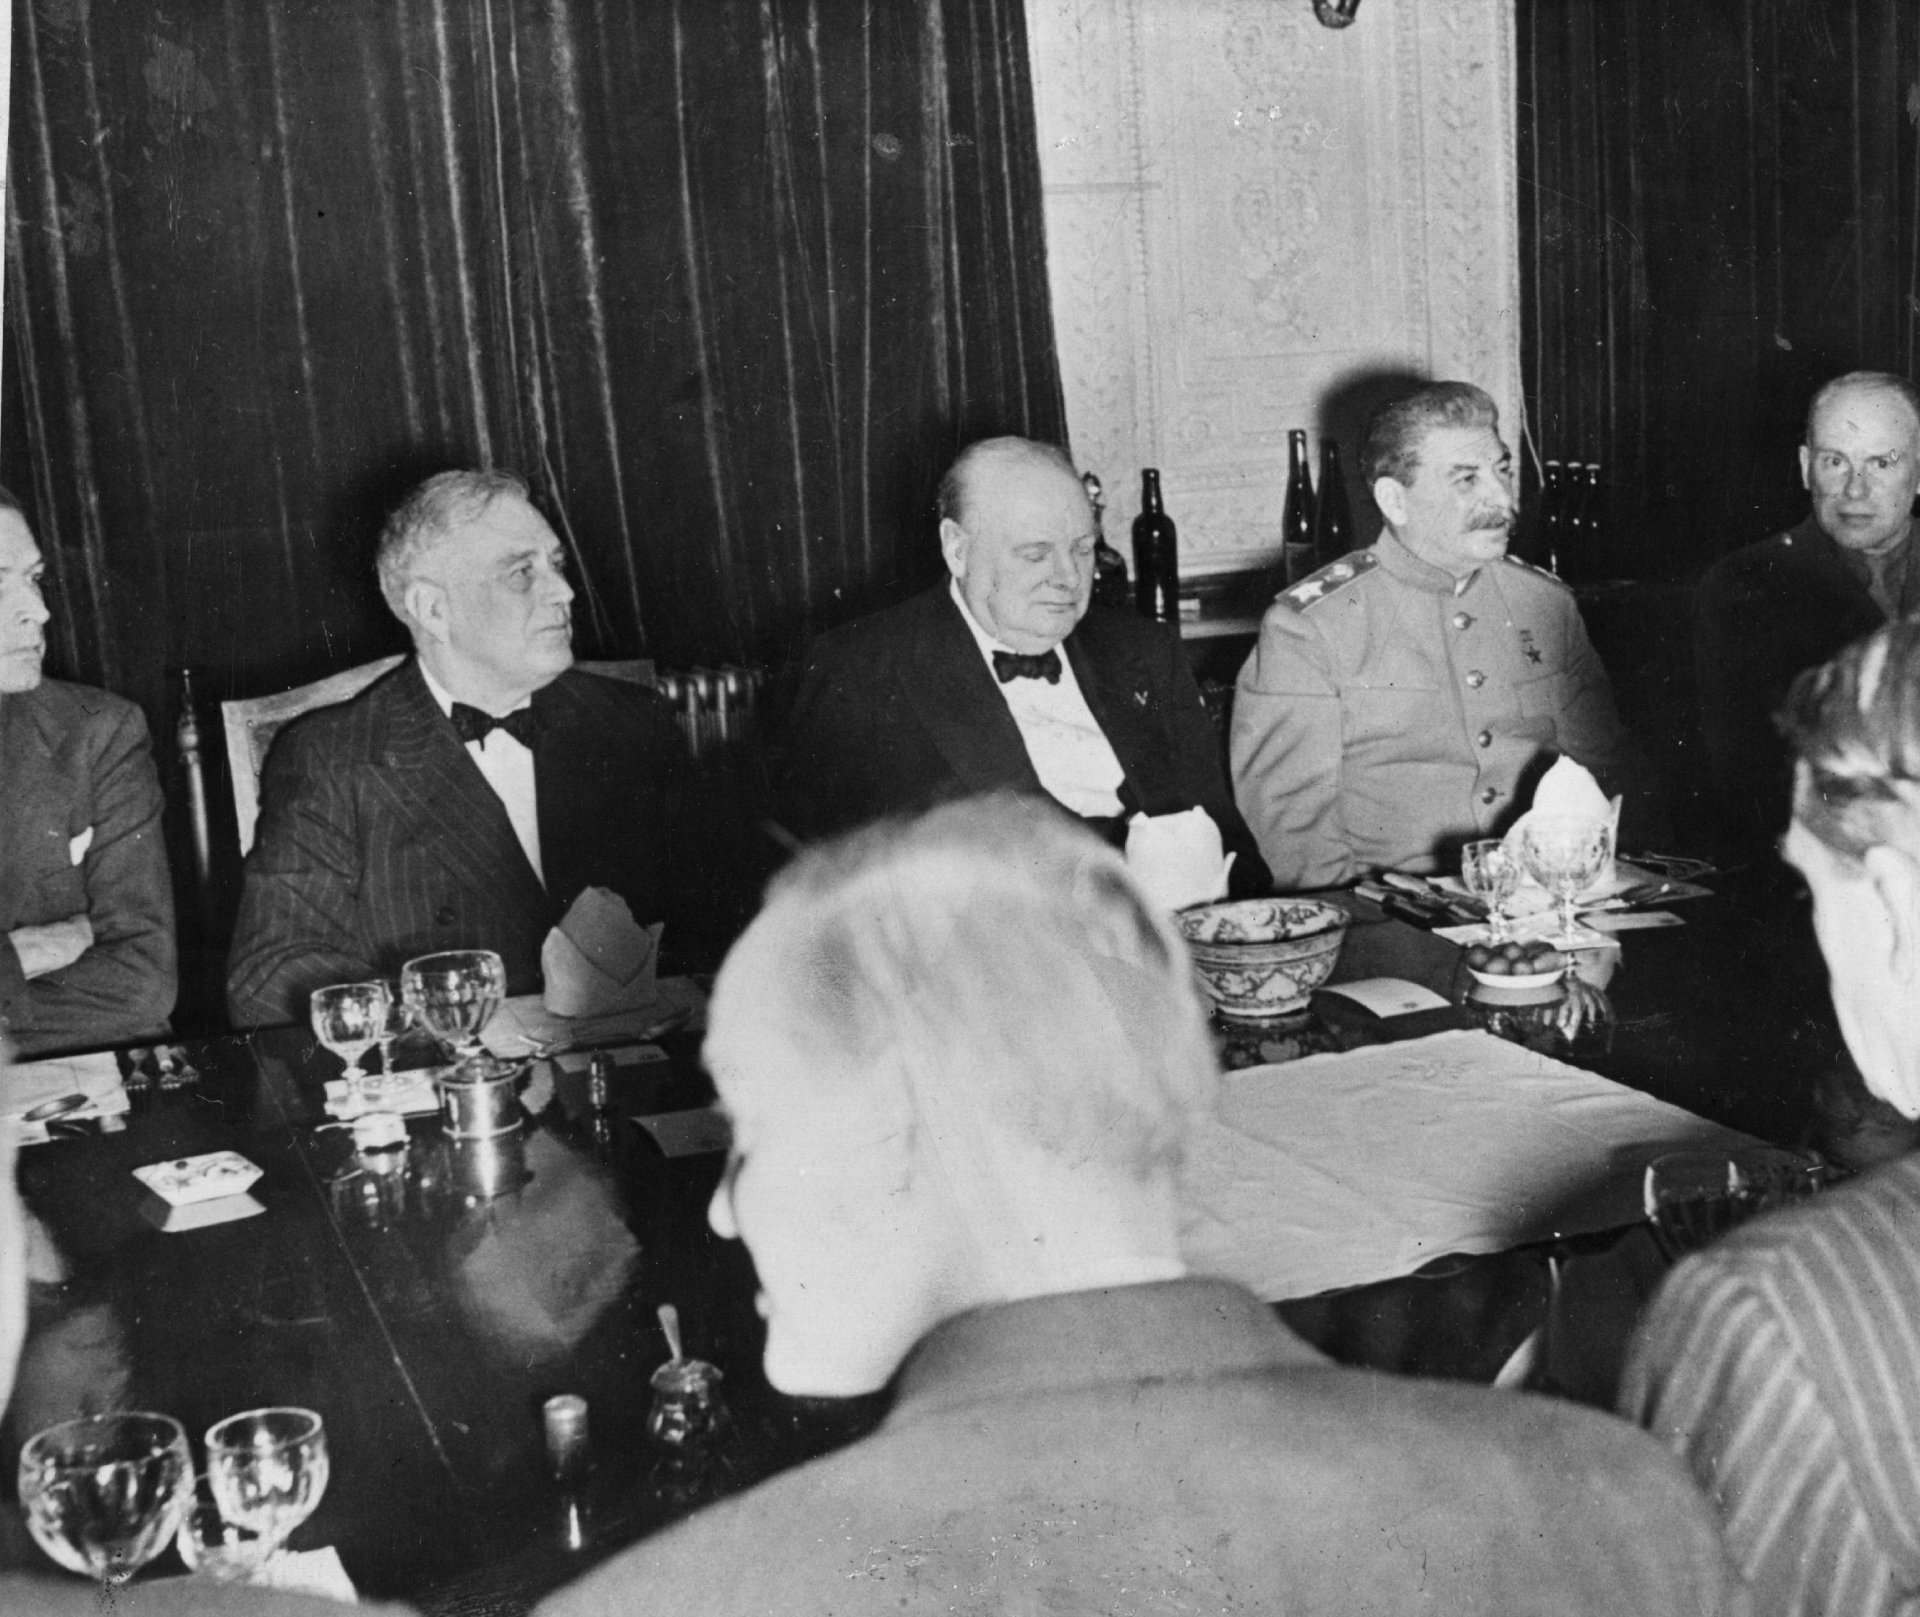 6 декември 1943 г. - 32-ият президент на Съединените американски щати Франклин Делано Рузвелт, британският министър-председател Уинстън Чърчил и съветският лидер Йосиф Сталин на частна вечеря по случай 69-ия рожден ден на Чърчил по време на конференцията в Техеран.